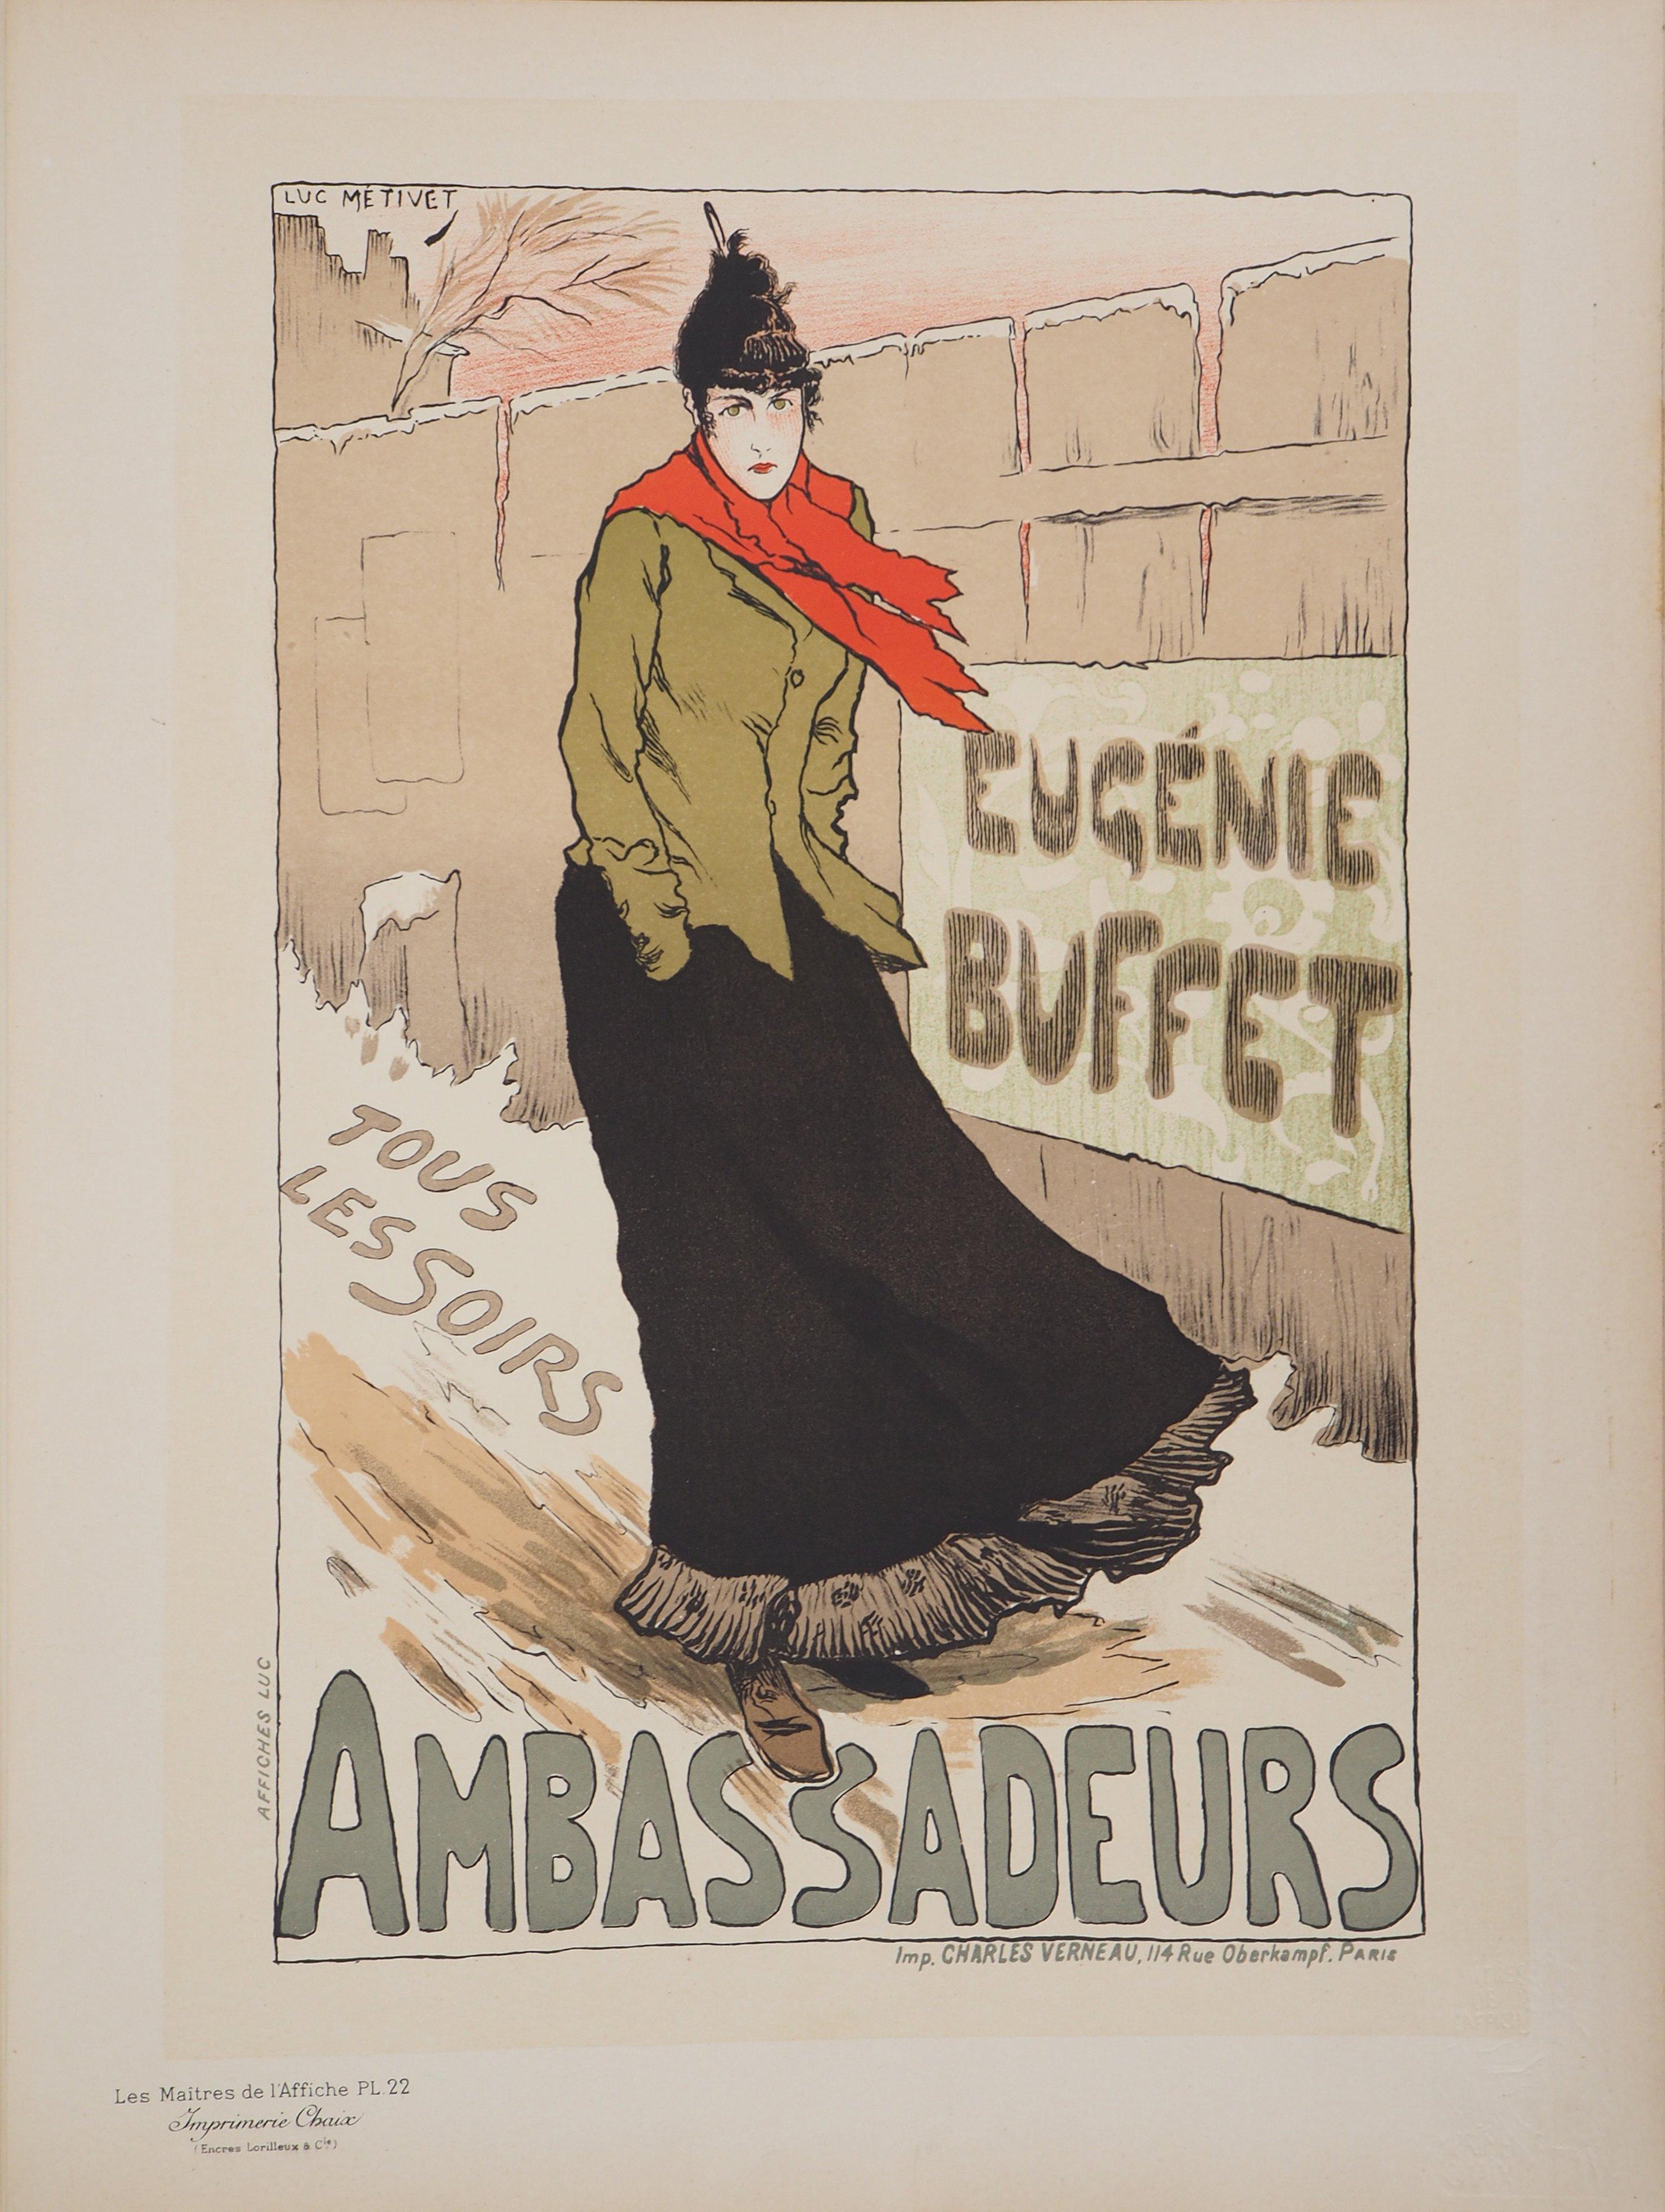 Eugénie Buffet (Ambassadeurs) - Lithograph (Les Maîtres de l'Affiche), 1895 - Print by Lucien Métivet